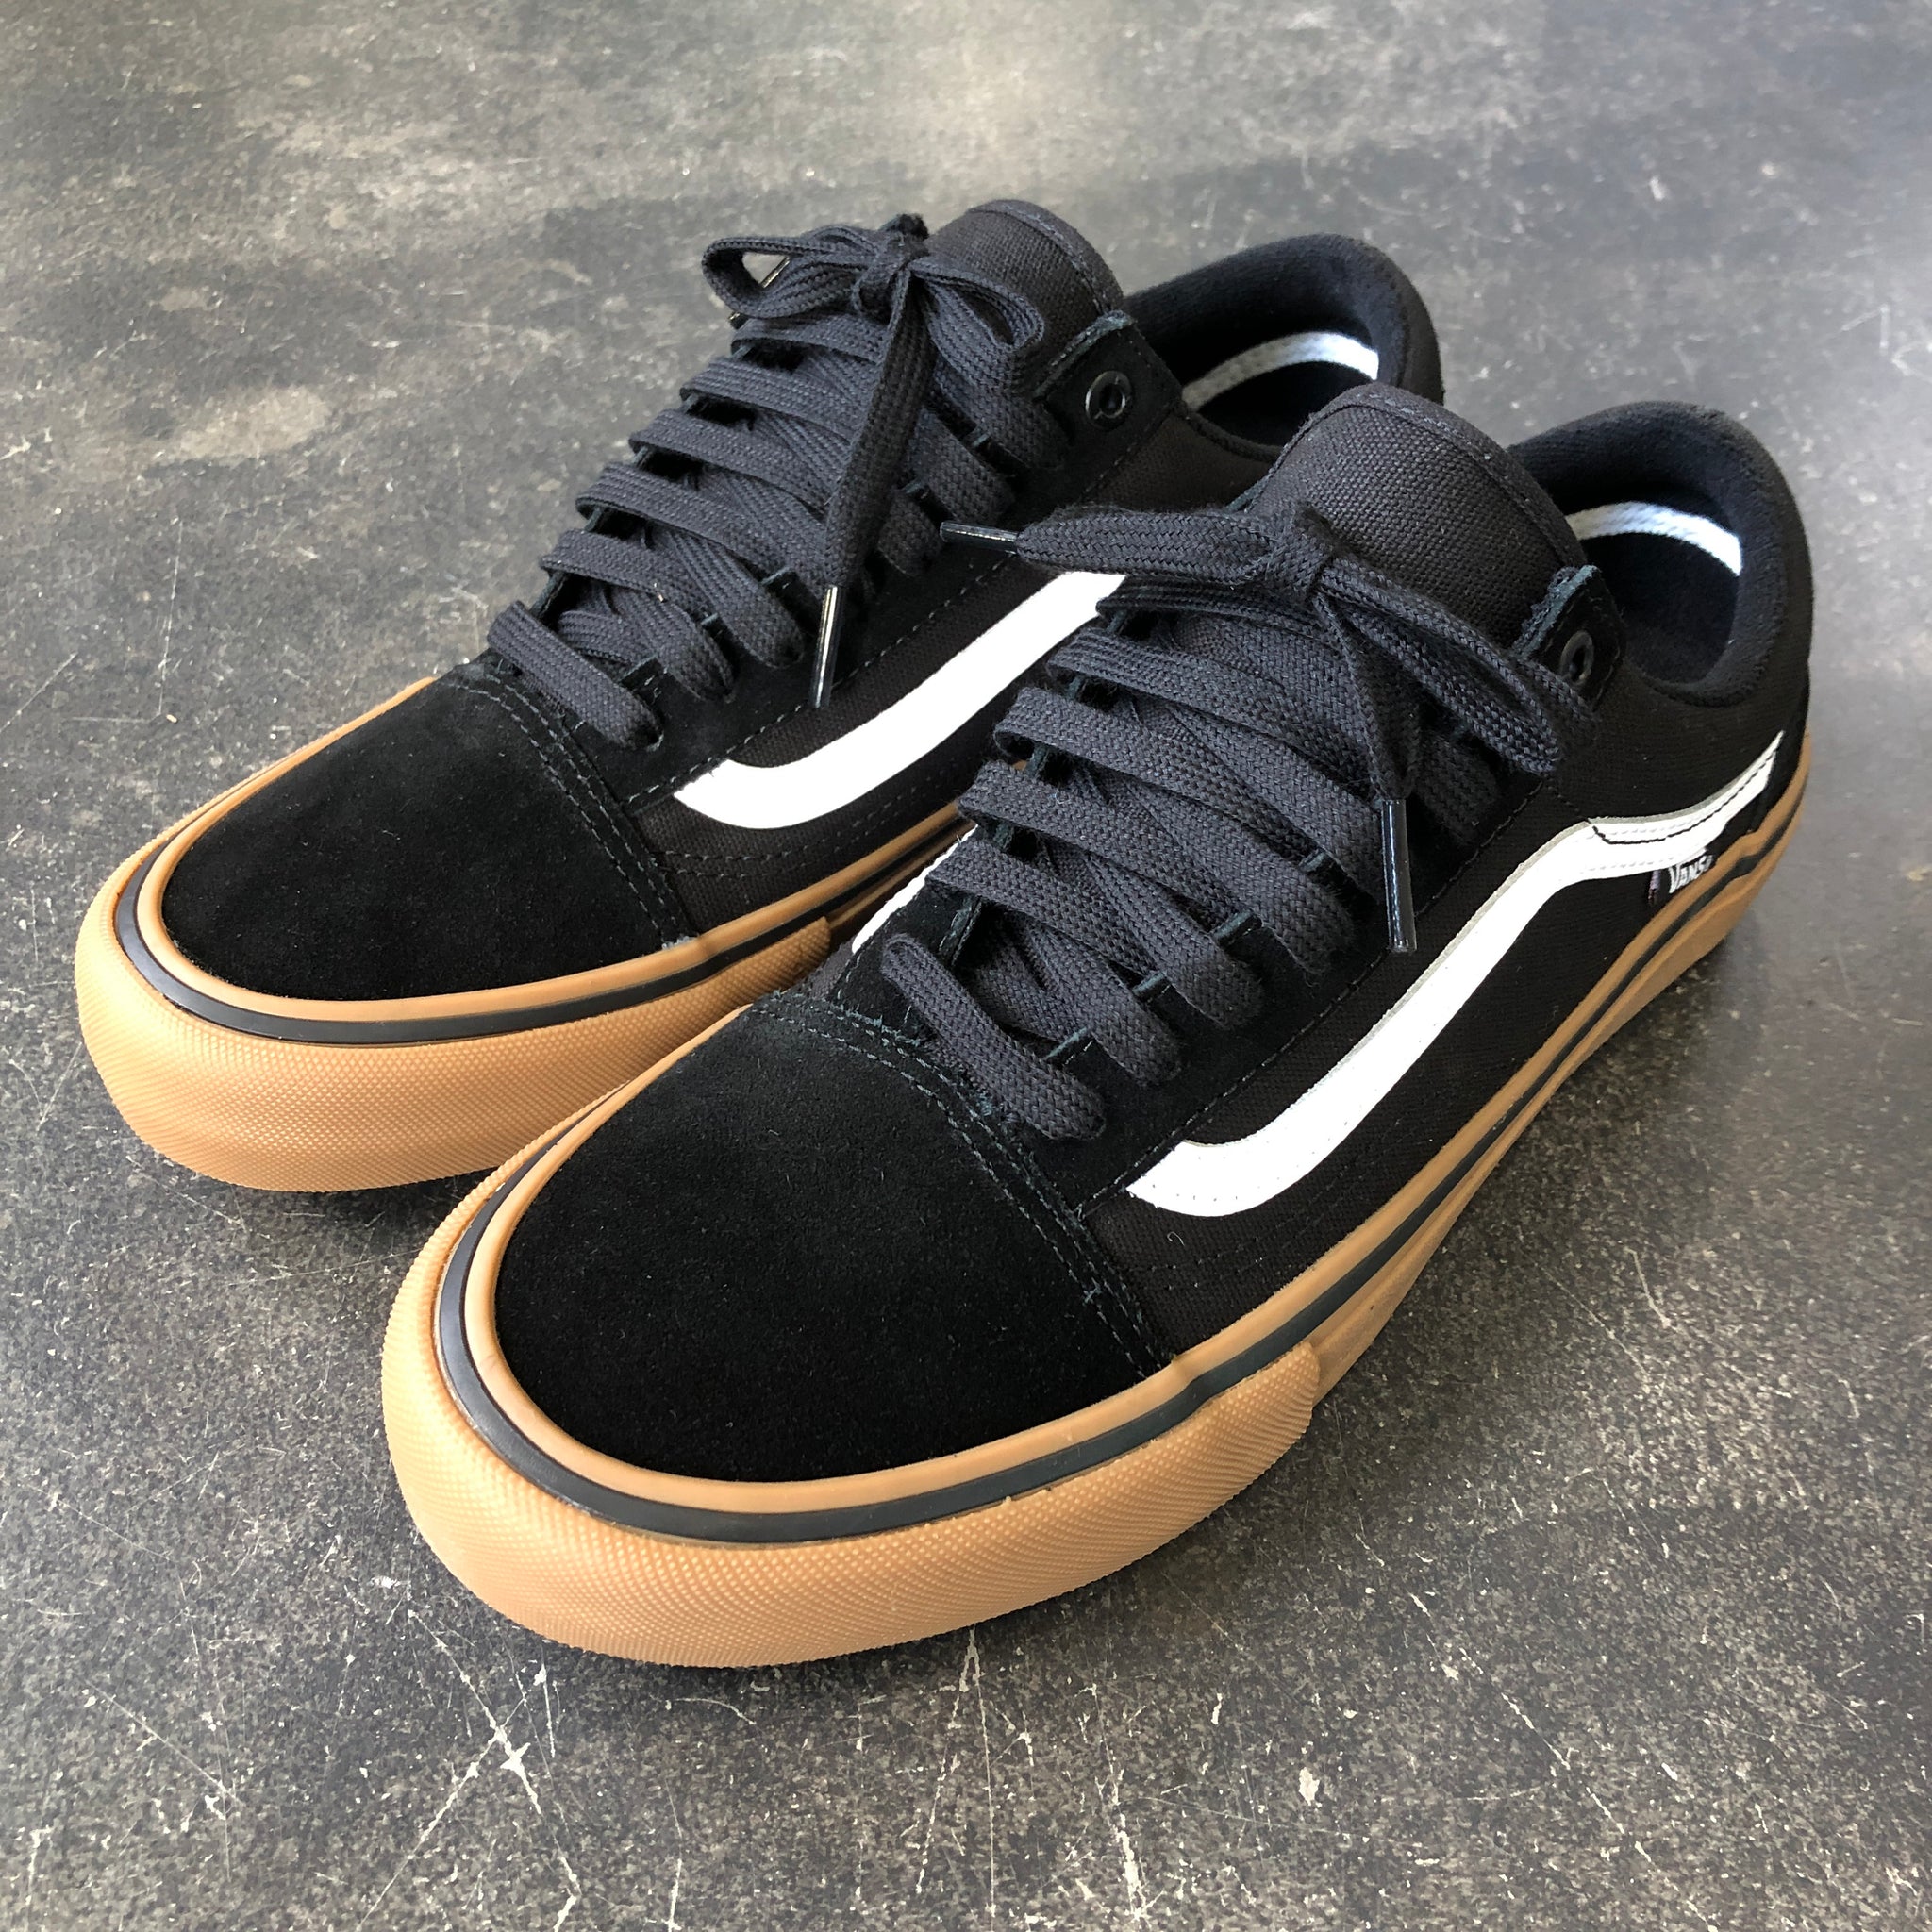 Vans Old Skool Pro Black/Gum – 561 Skate